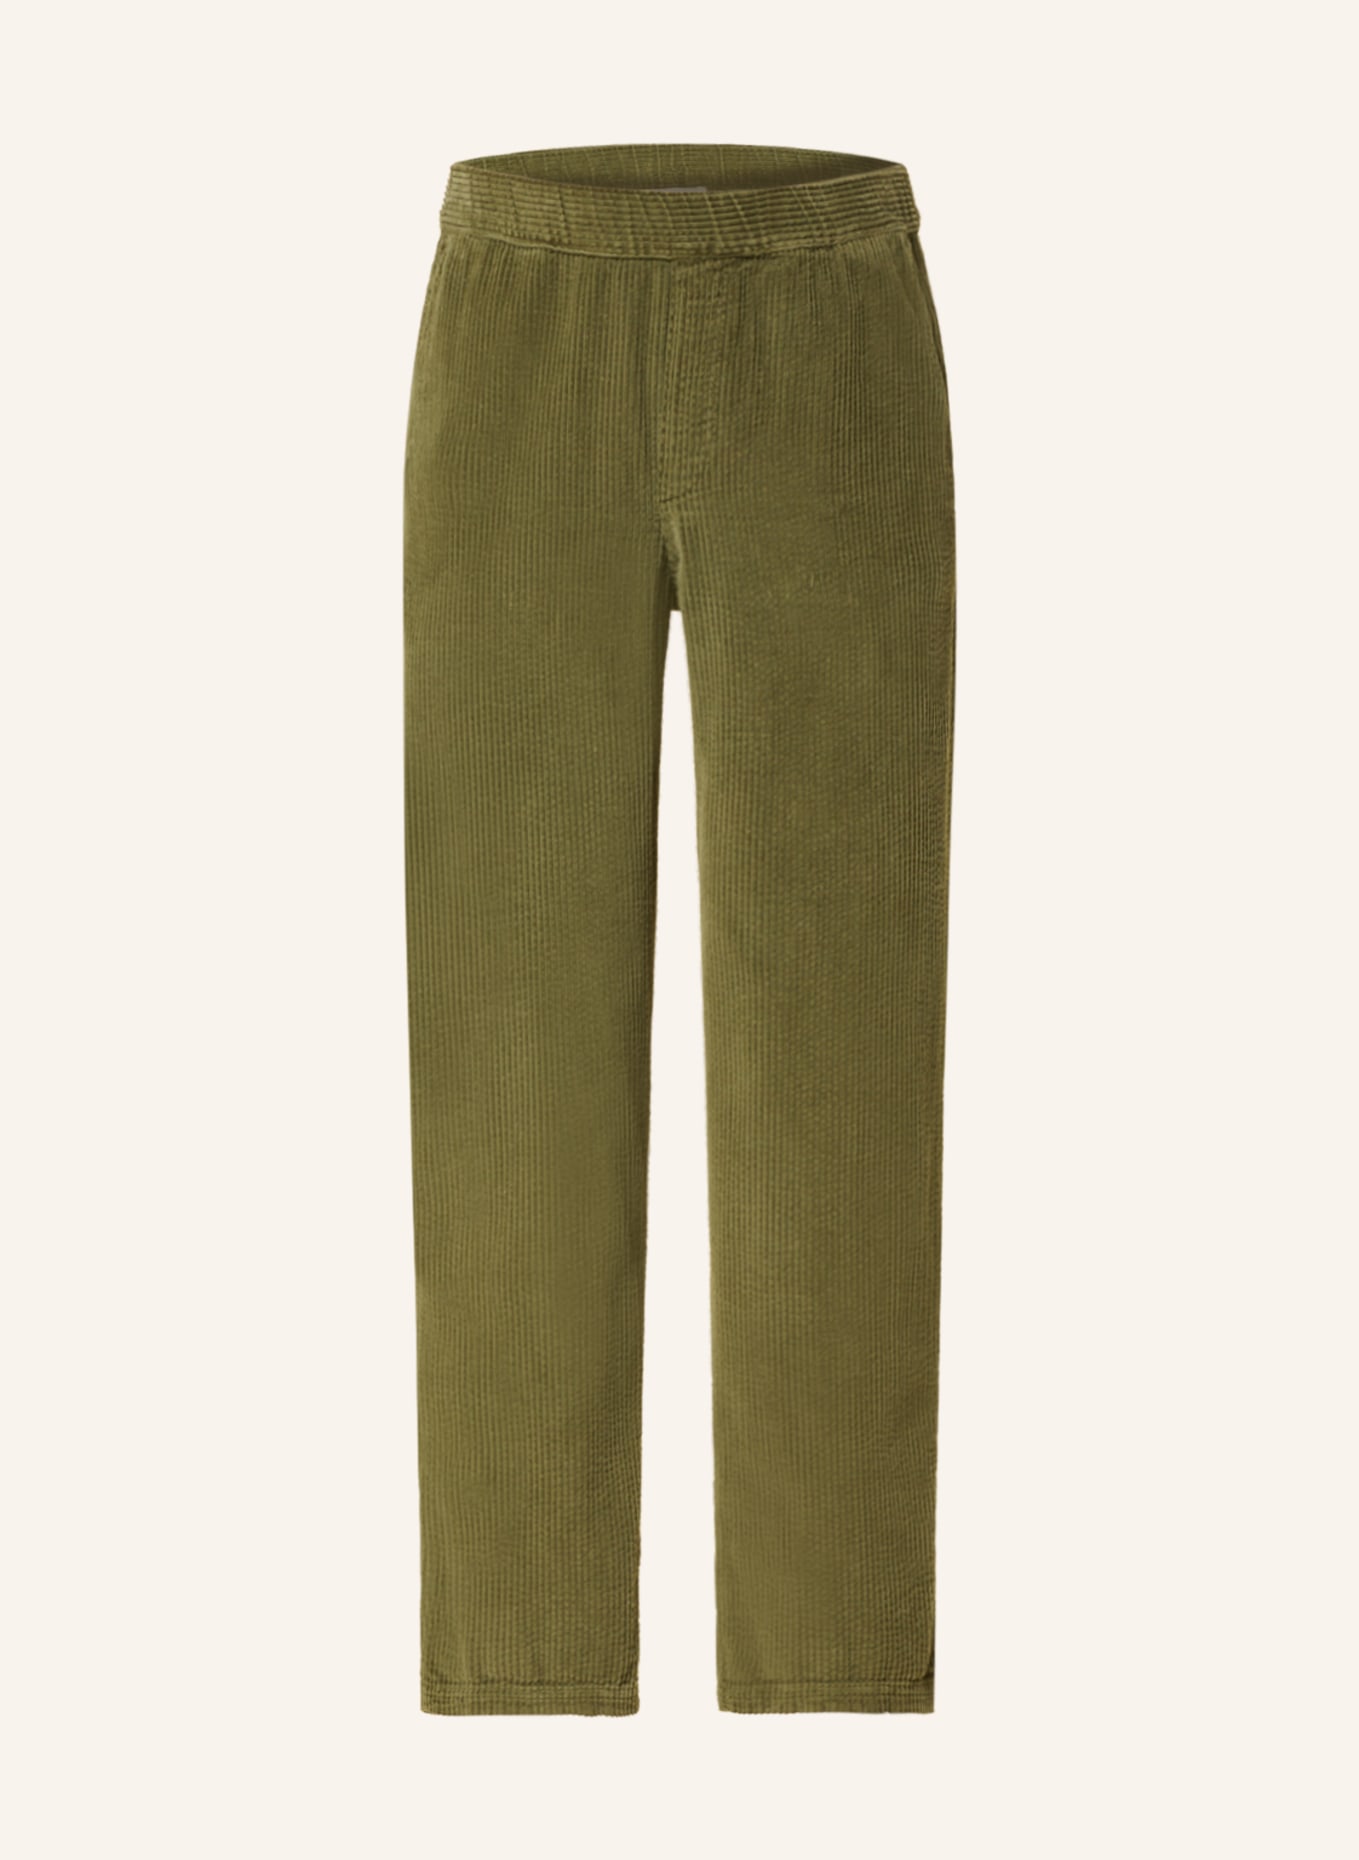 Вельветовые брюки American Vintage im Jogging-Stil, оливковый